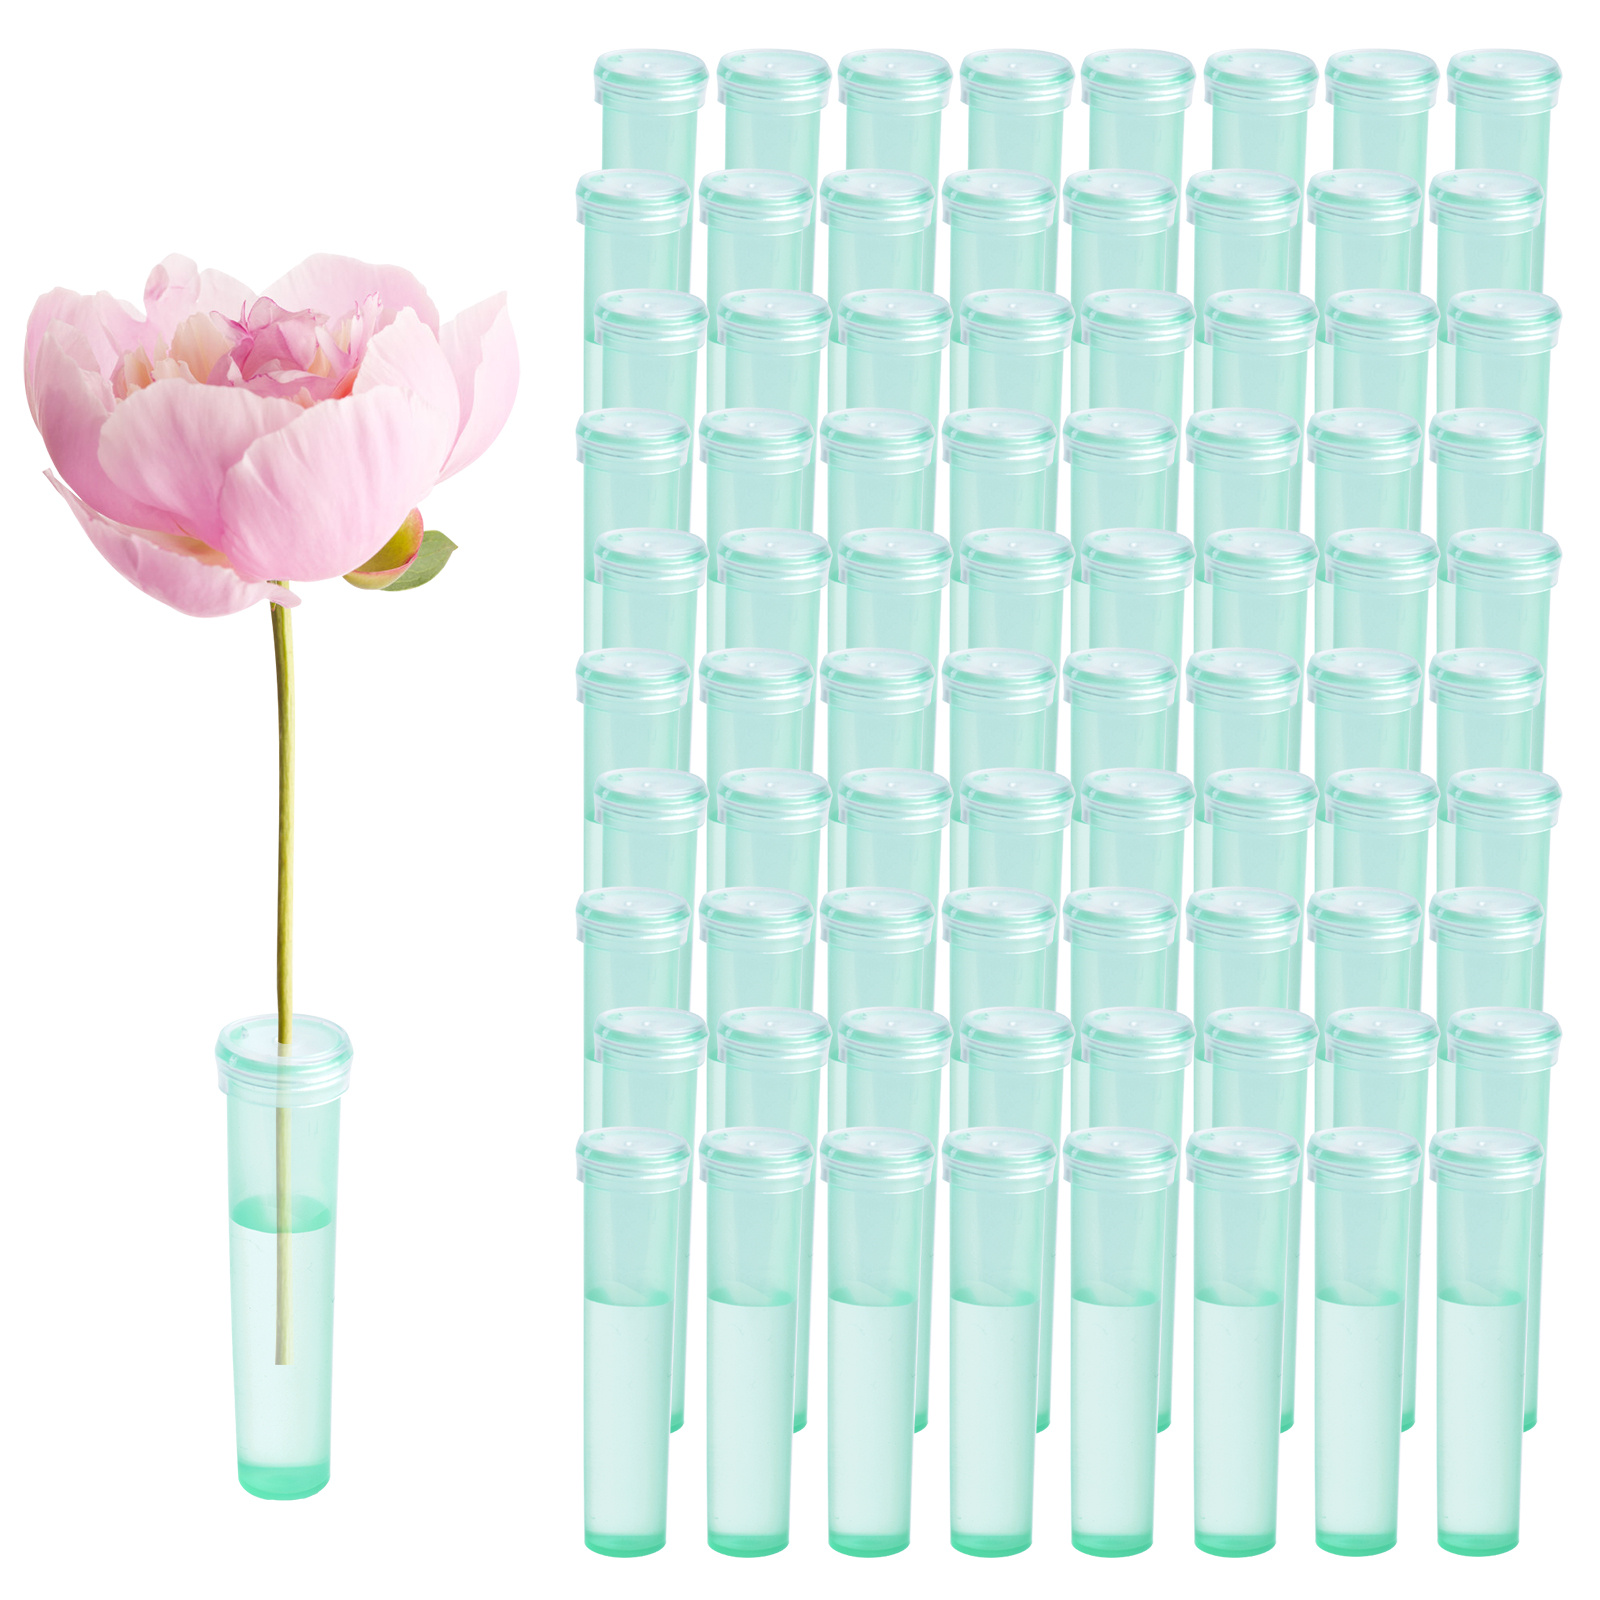 100pcs Small Test Tube Flower water tubes for flowers ikebana